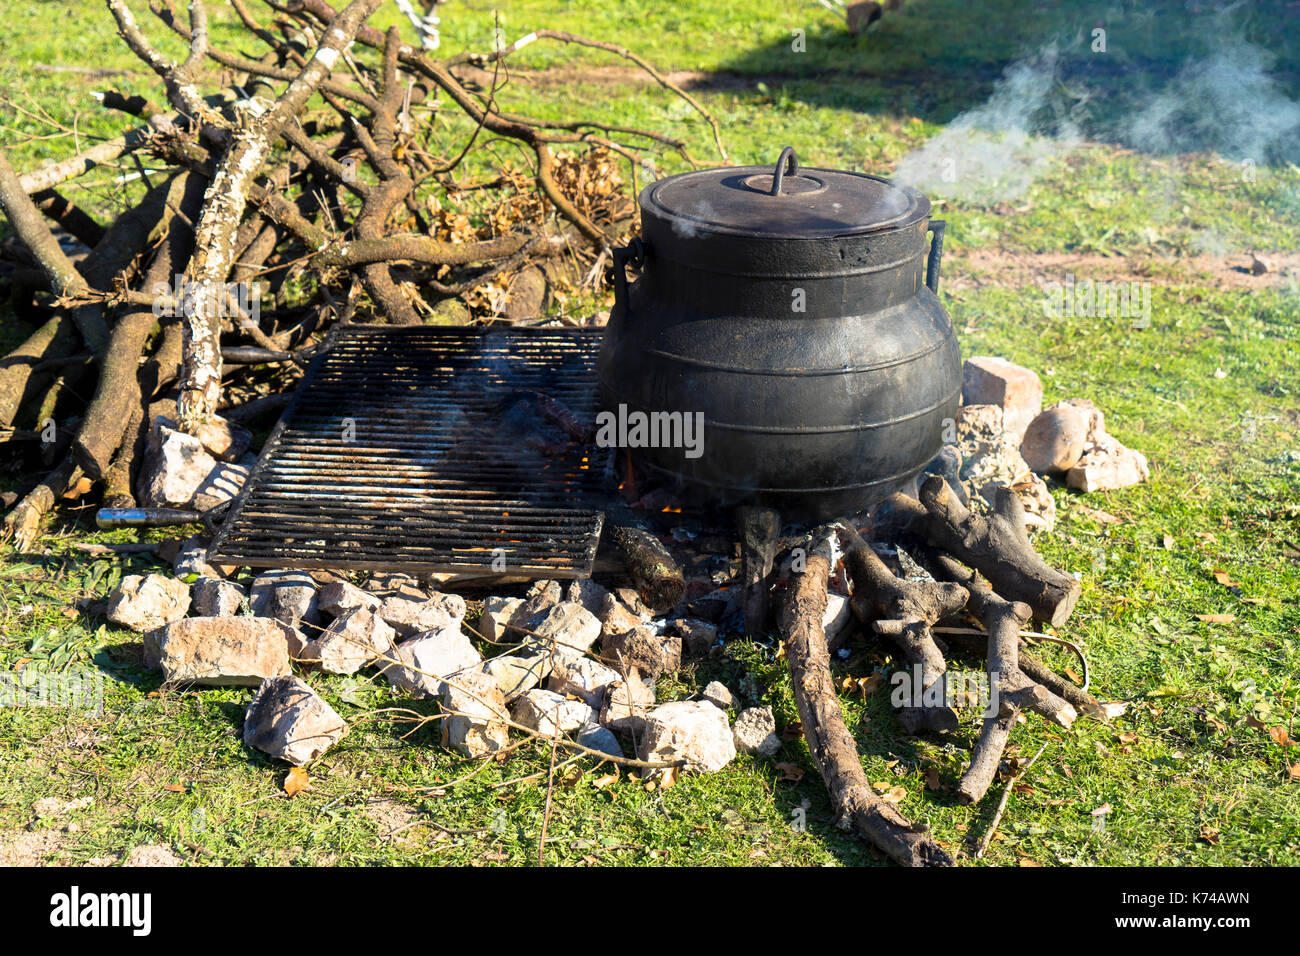 La cuisson sur un feu ouvert à l'aide d'une marmite fumante doucement sur un feu de bois Banque D'Images